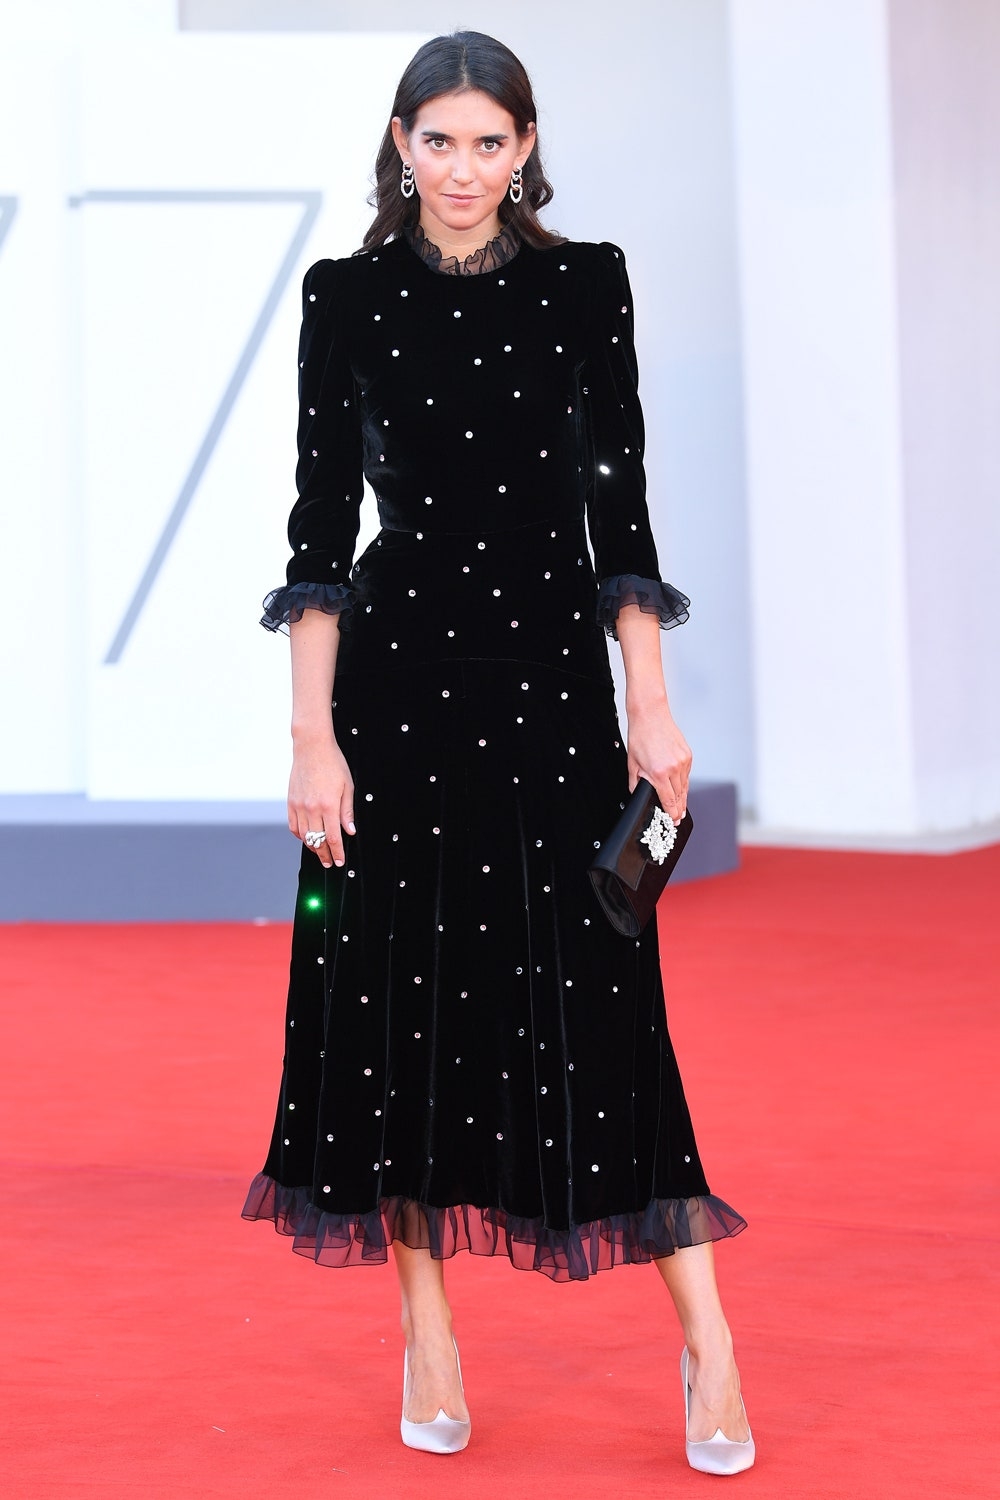 Маска Тильды Суинтон и "старое платье" Кейт Бланшетт: самые яркие образы Венецианского кинофестиваля 2020 - фото №8